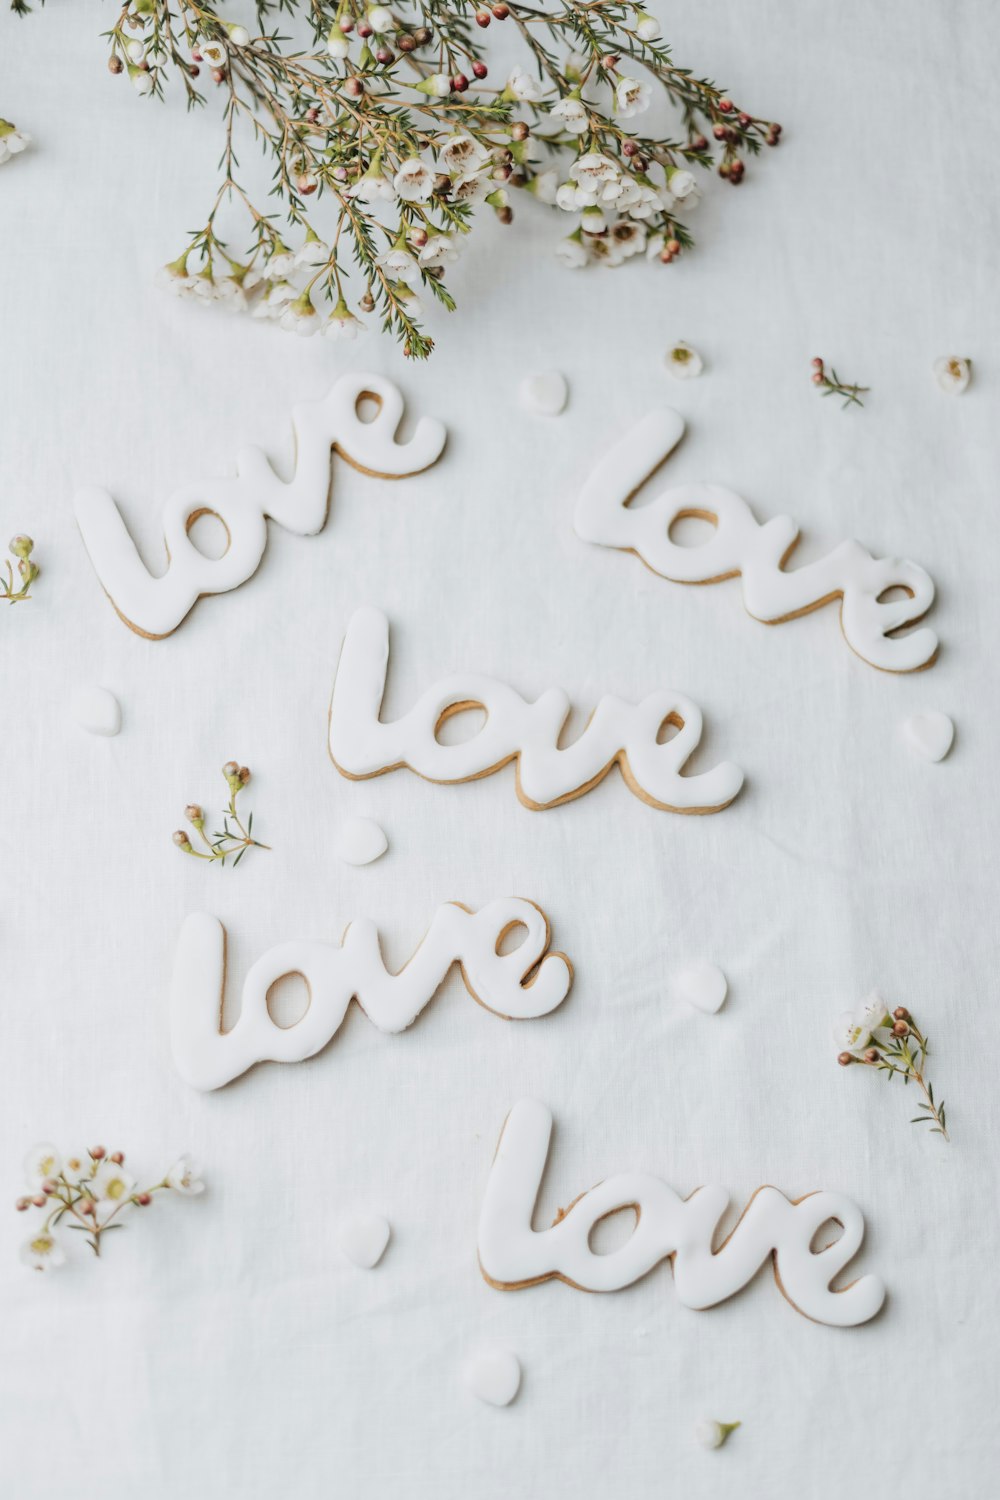 Le parole amore e amore scritte su un foglio di carta